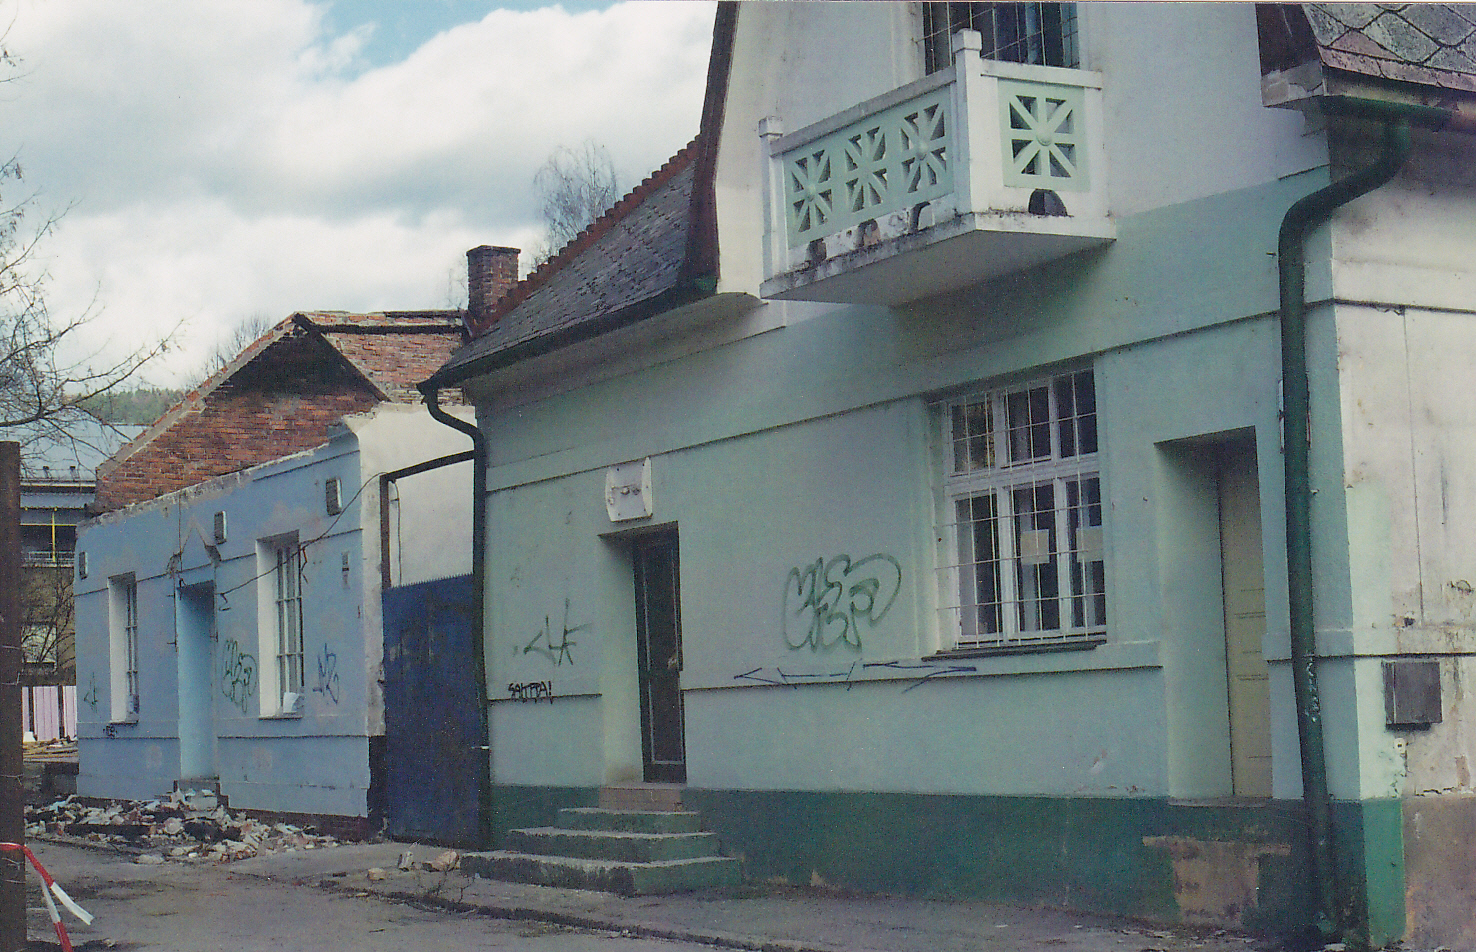 Domy na rohu ulíc F. Urbánka a Štefánikovej (dnes tzv. Štefánka) odfotografované pri demolácii okolo r. 2005